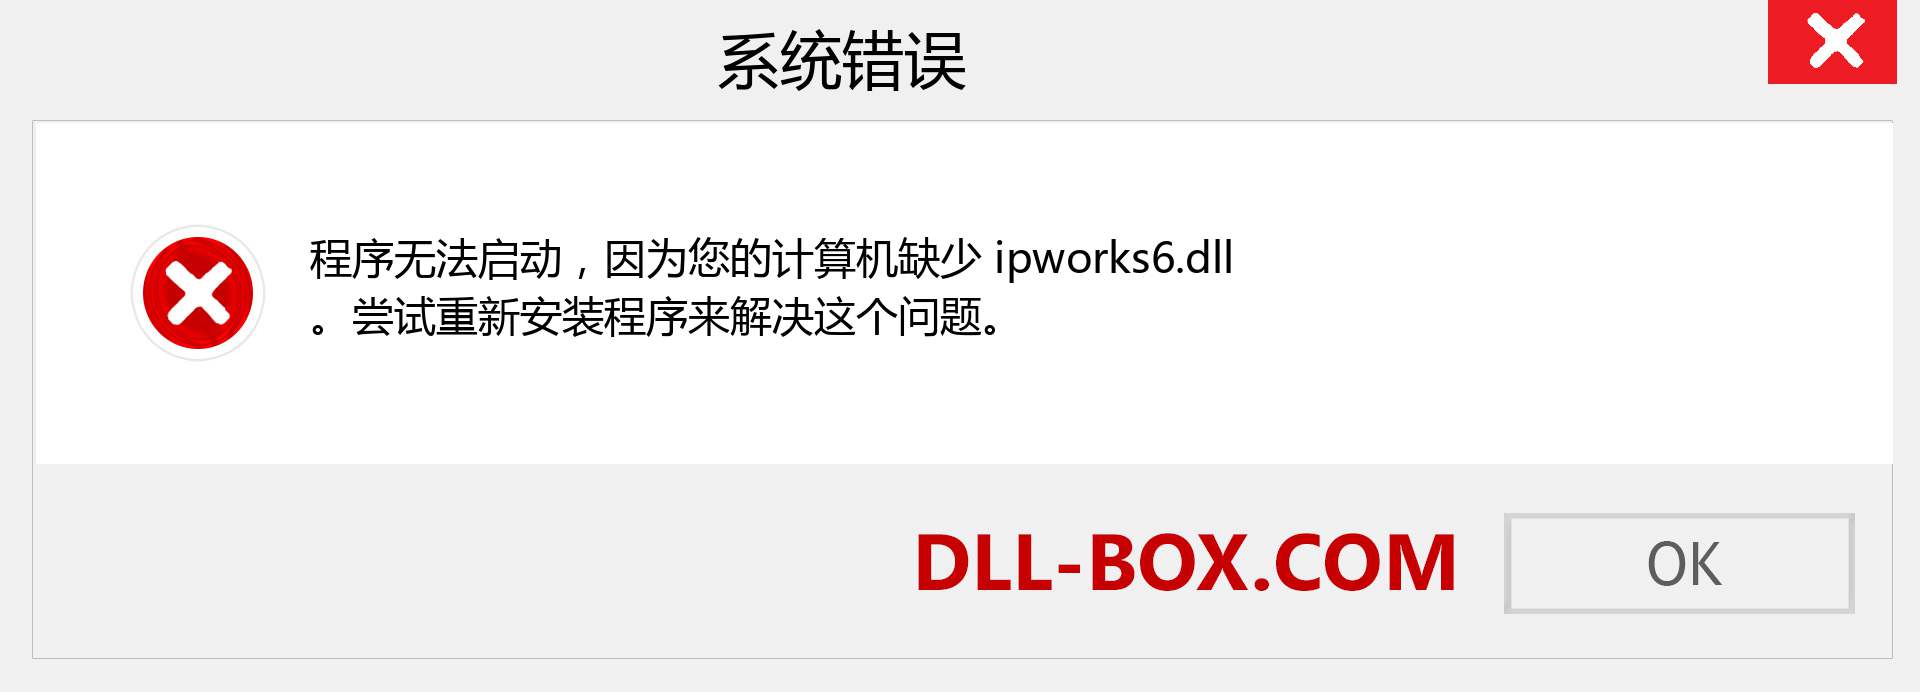 ipworks6.dll 文件丢失？。 适用于 Windows 7、8、10 的下载 - 修复 Windows、照片、图像上的 ipworks6 dll 丢失错误